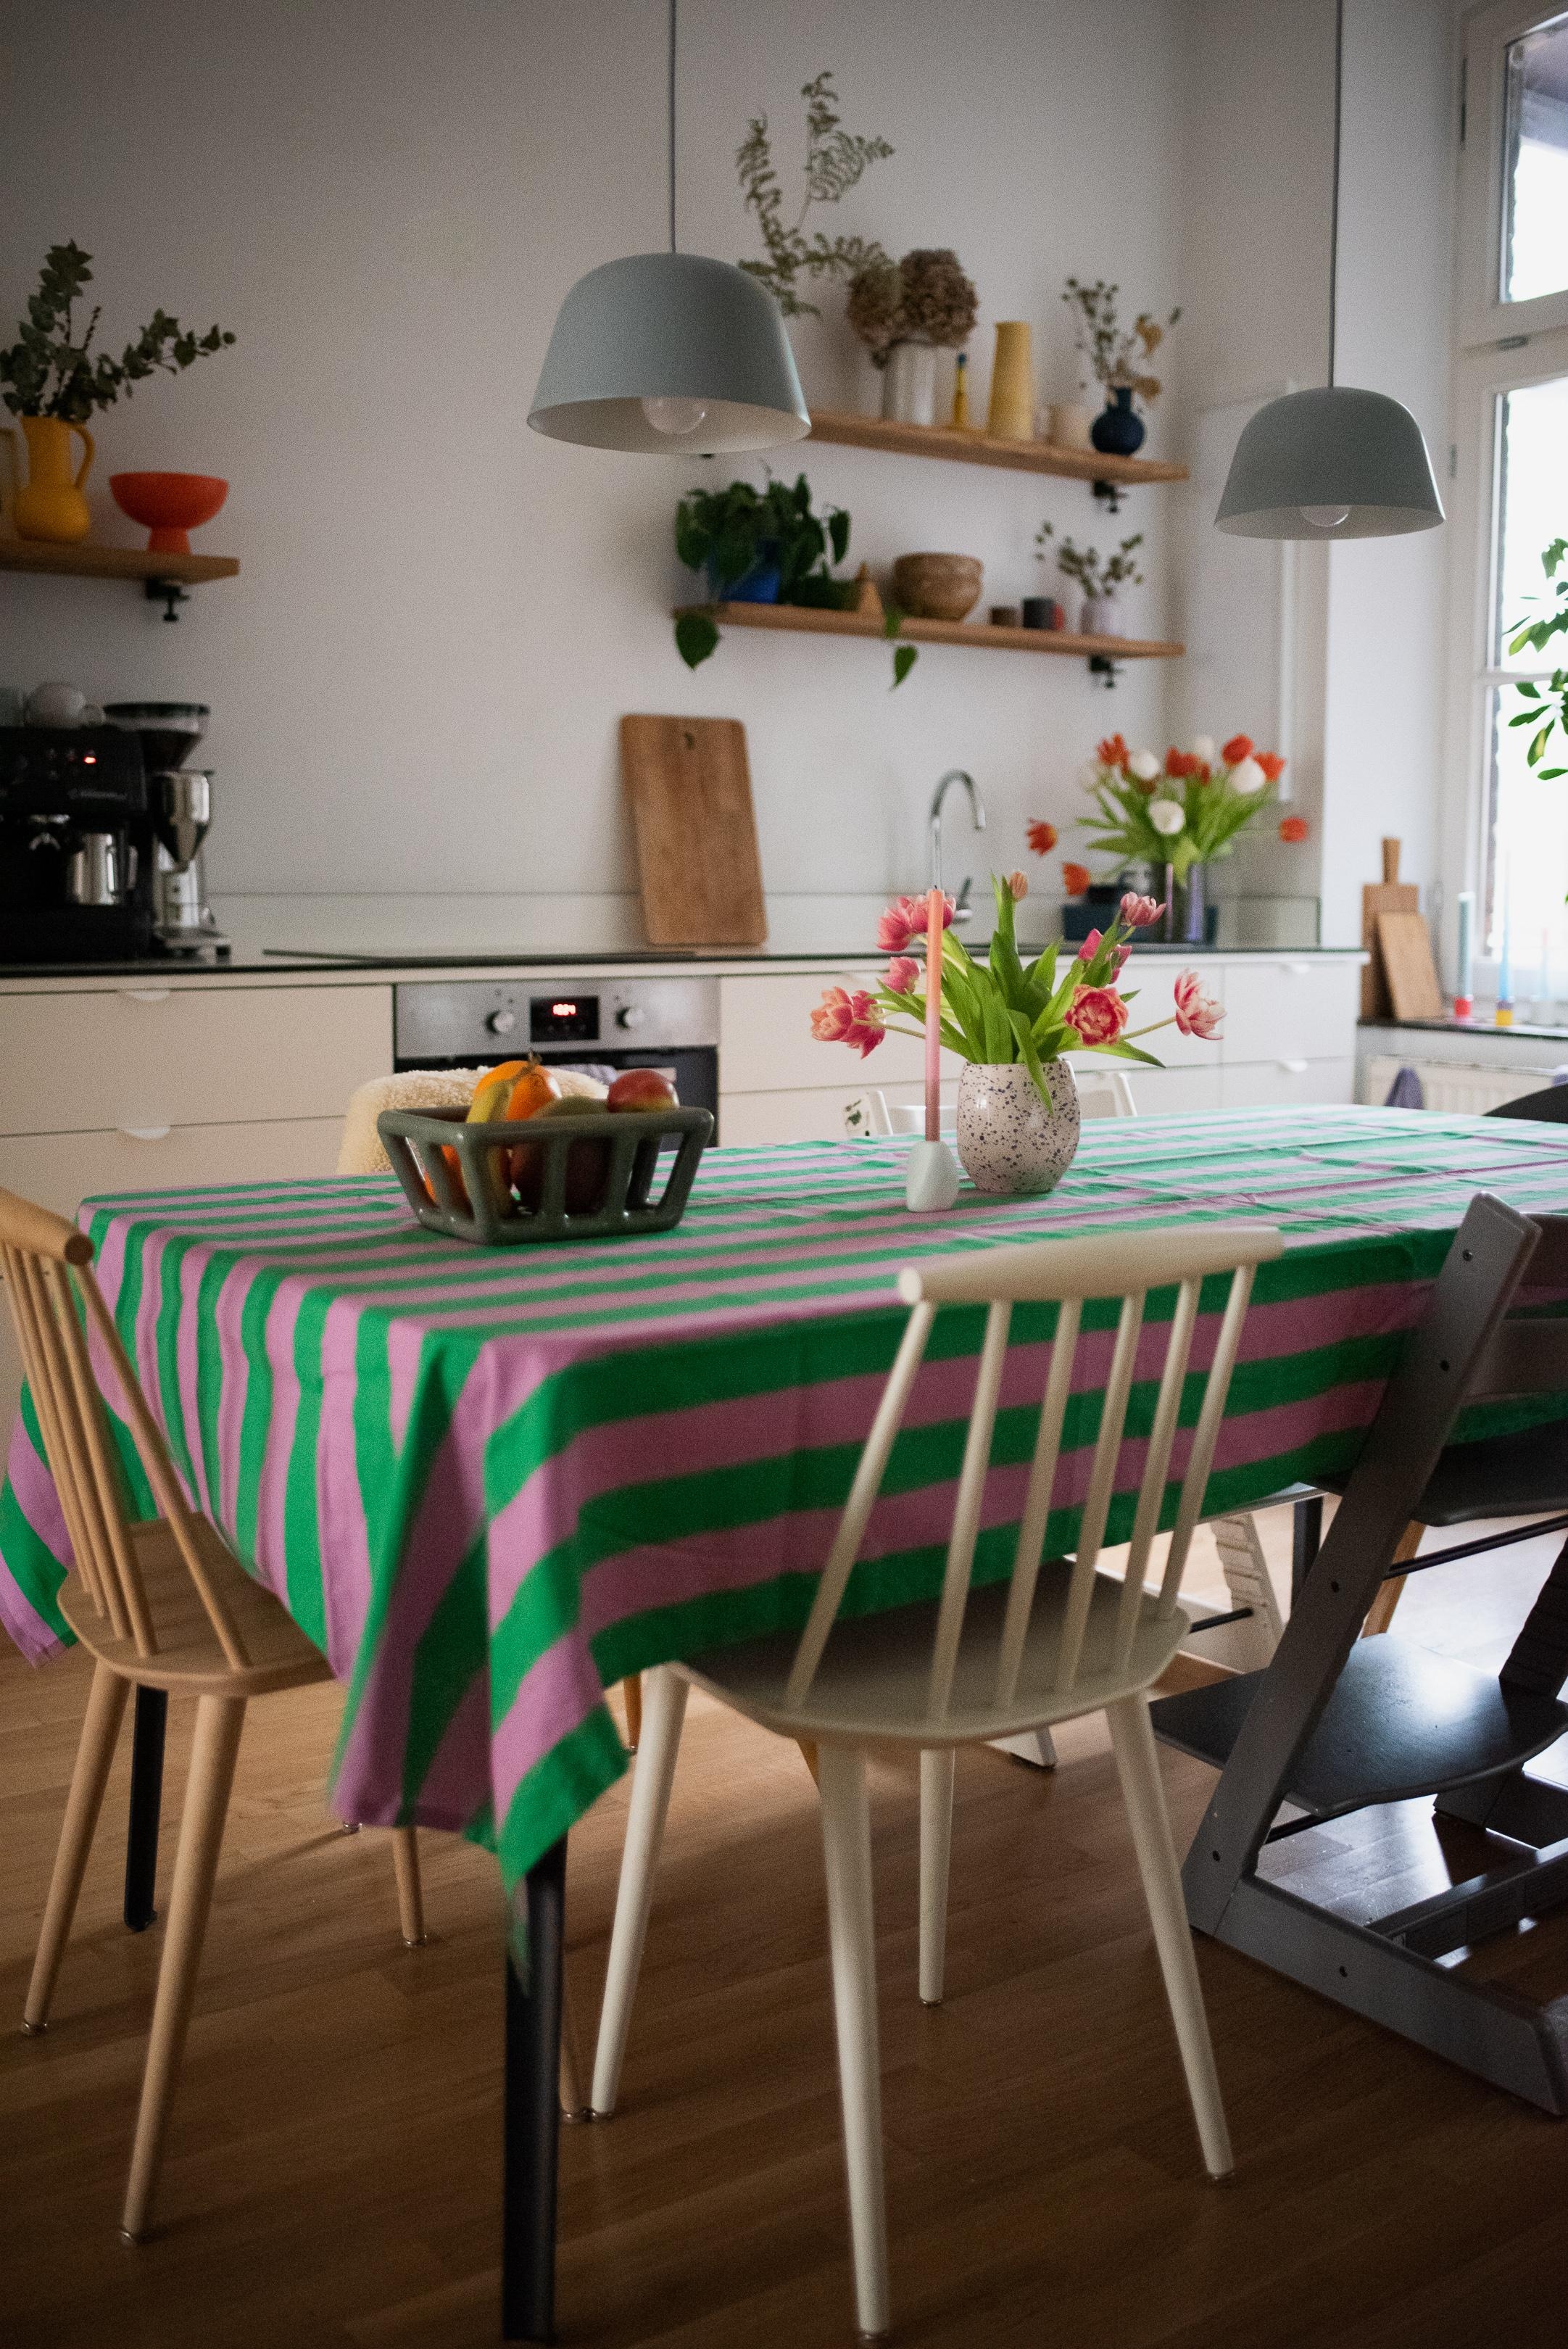 Kommt gut in die Woche #wohnküche #kitchenideas #kitchendesign #küche #kitcheninspo #esstisch #tischdecke